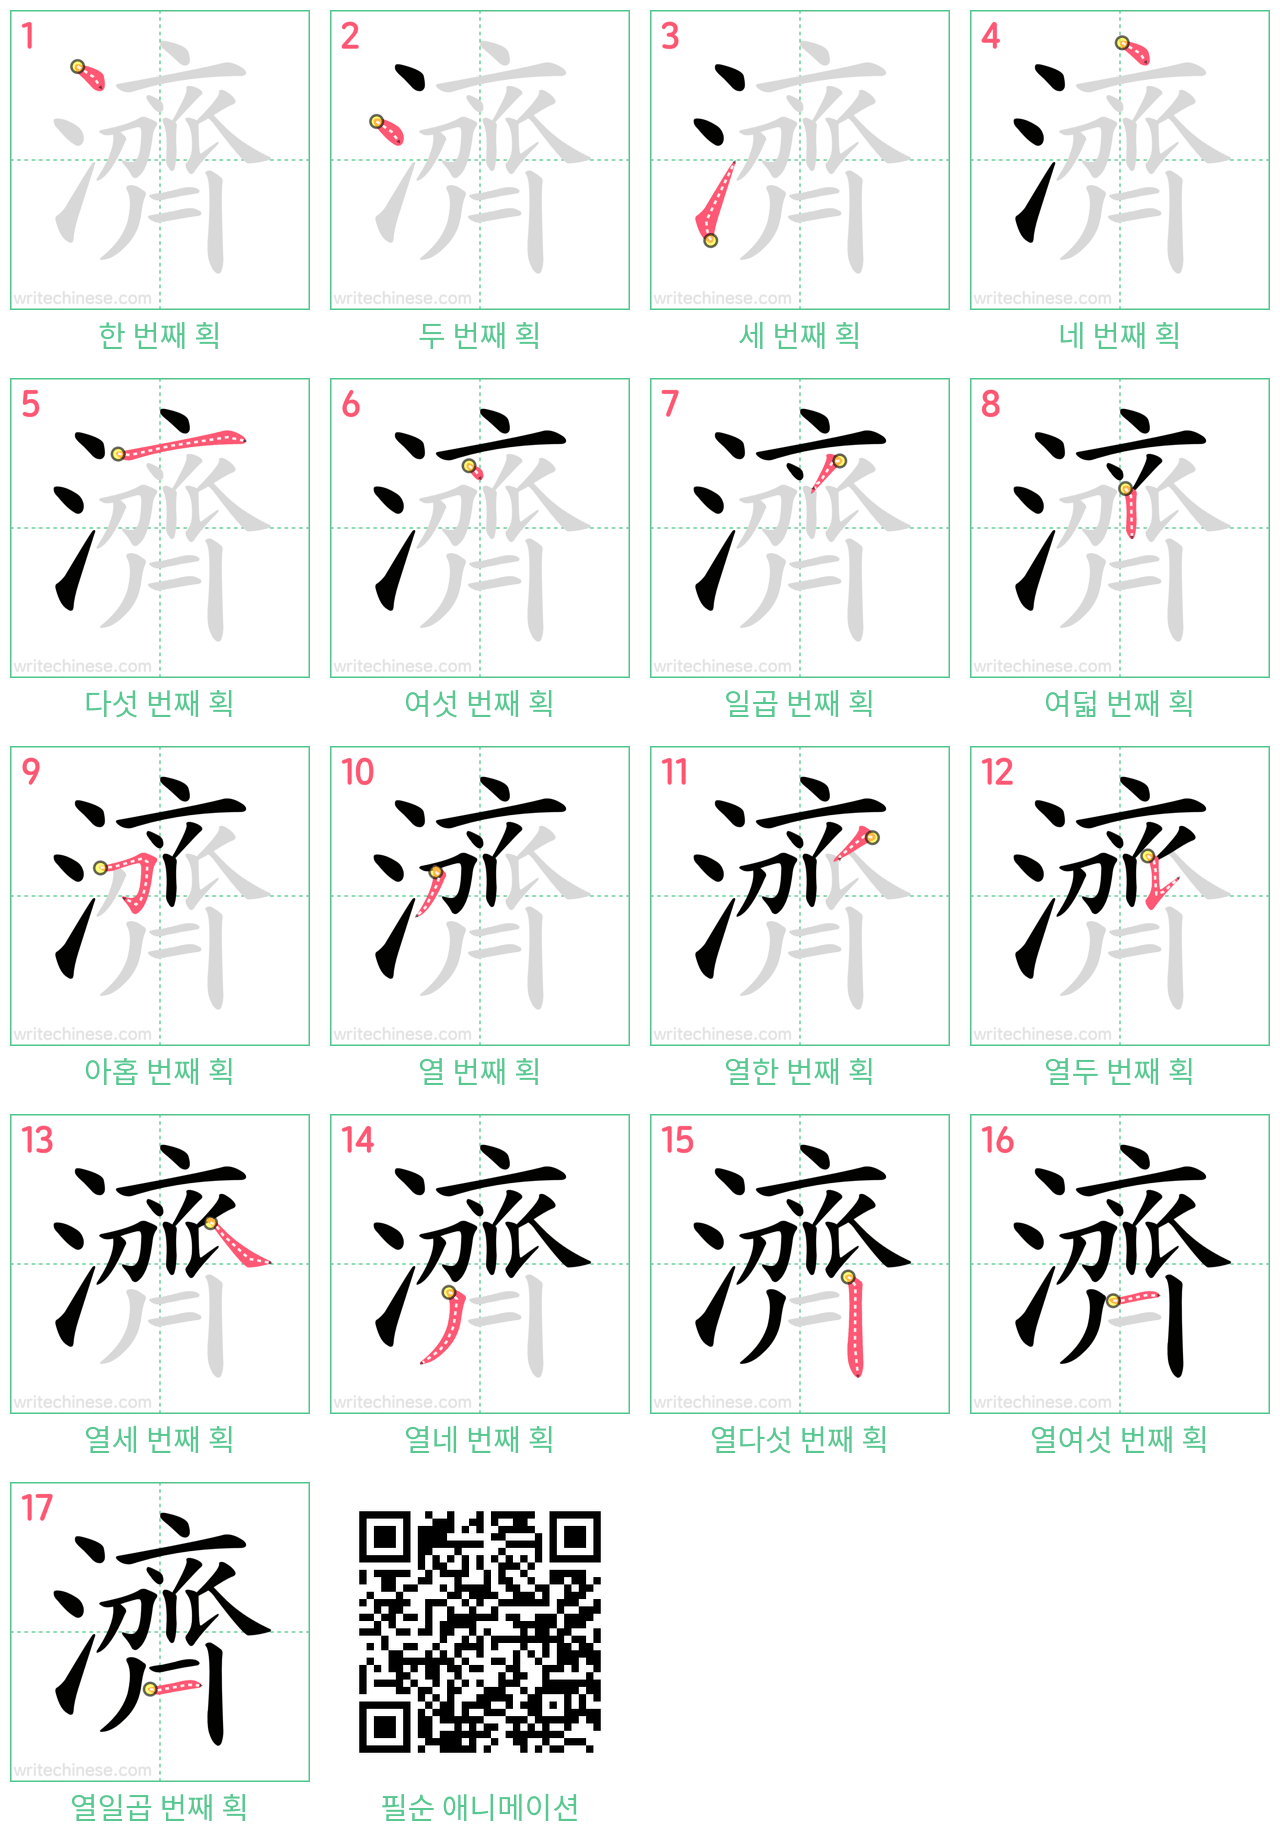 濟 step-by-step stroke order diagrams